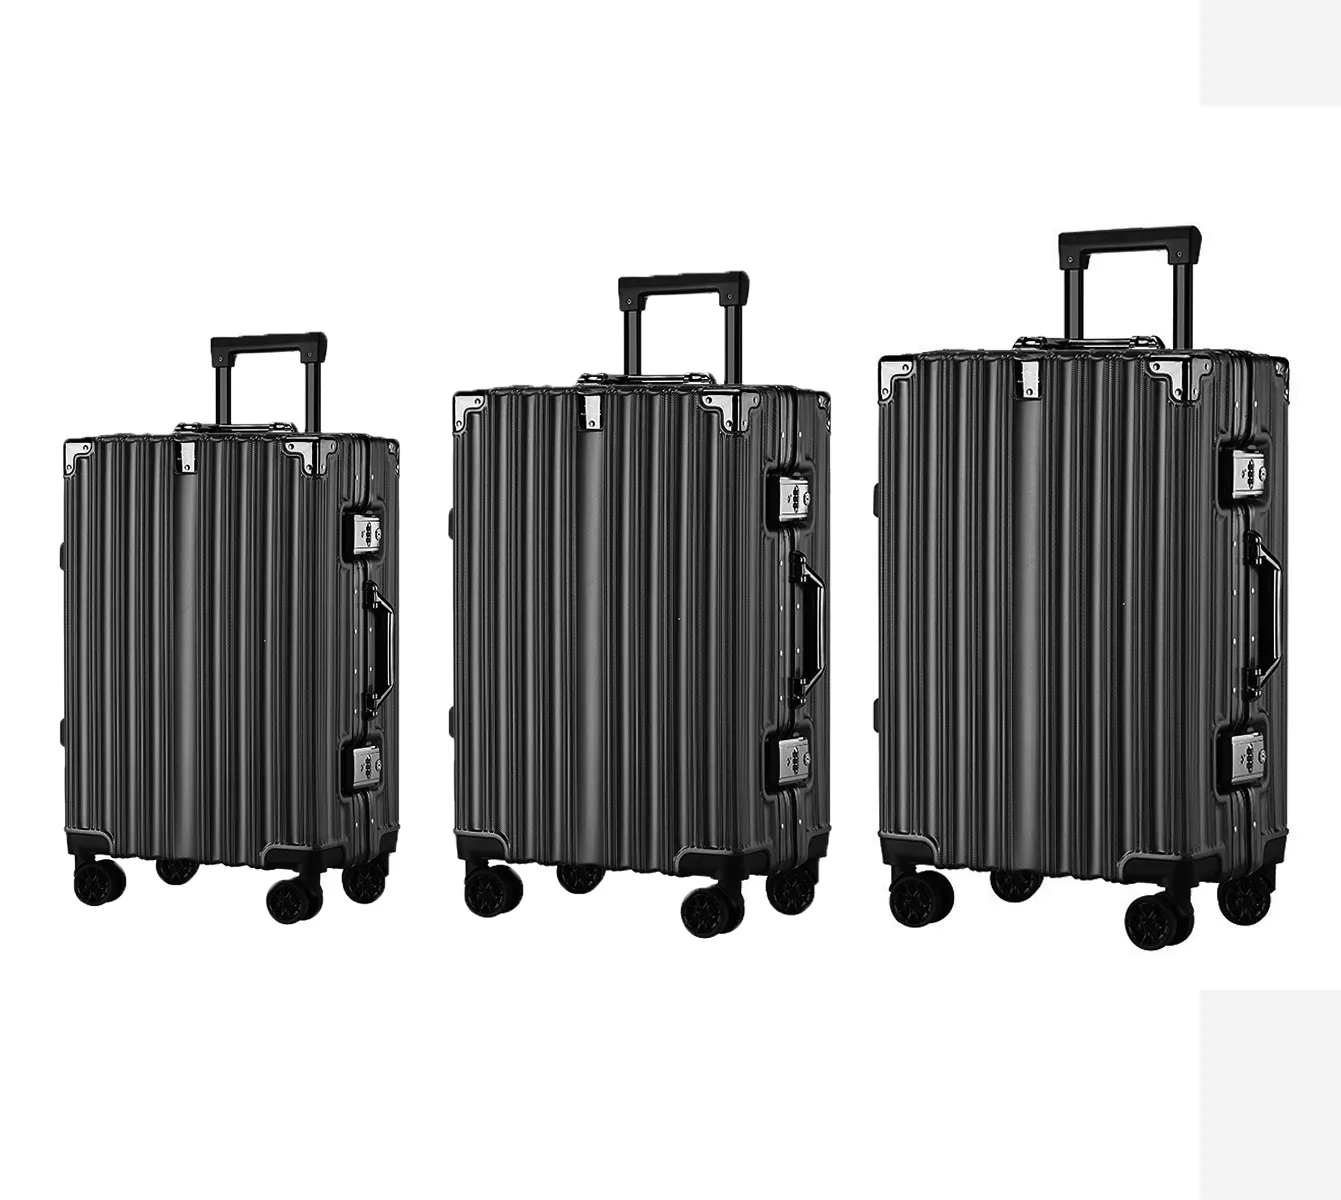 Maleta con marco de aluminio caliente YX16924, ligera, de gran capacidad, caja gruesa, bloqueo de código, maletas para exteriores, equipaje, Juego de 3 piezas